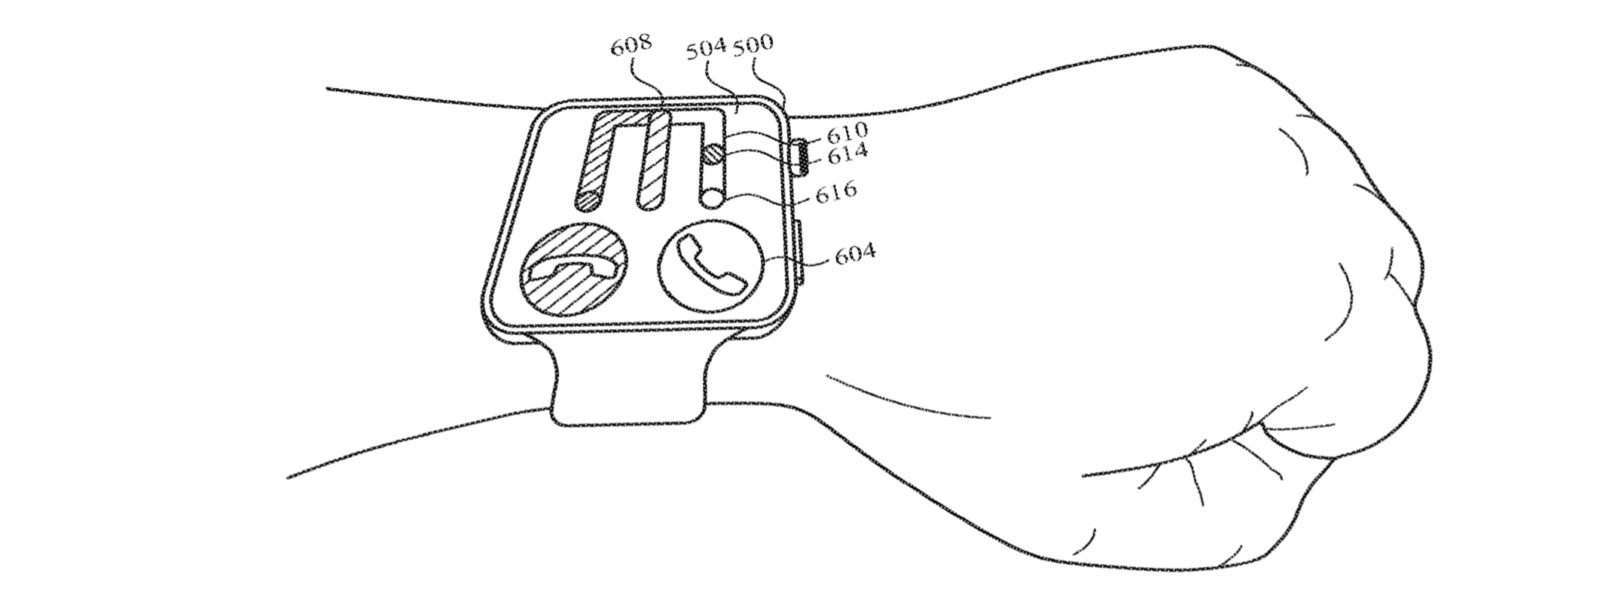 Apple studia nuove gesture per Apple Watch e iPhone